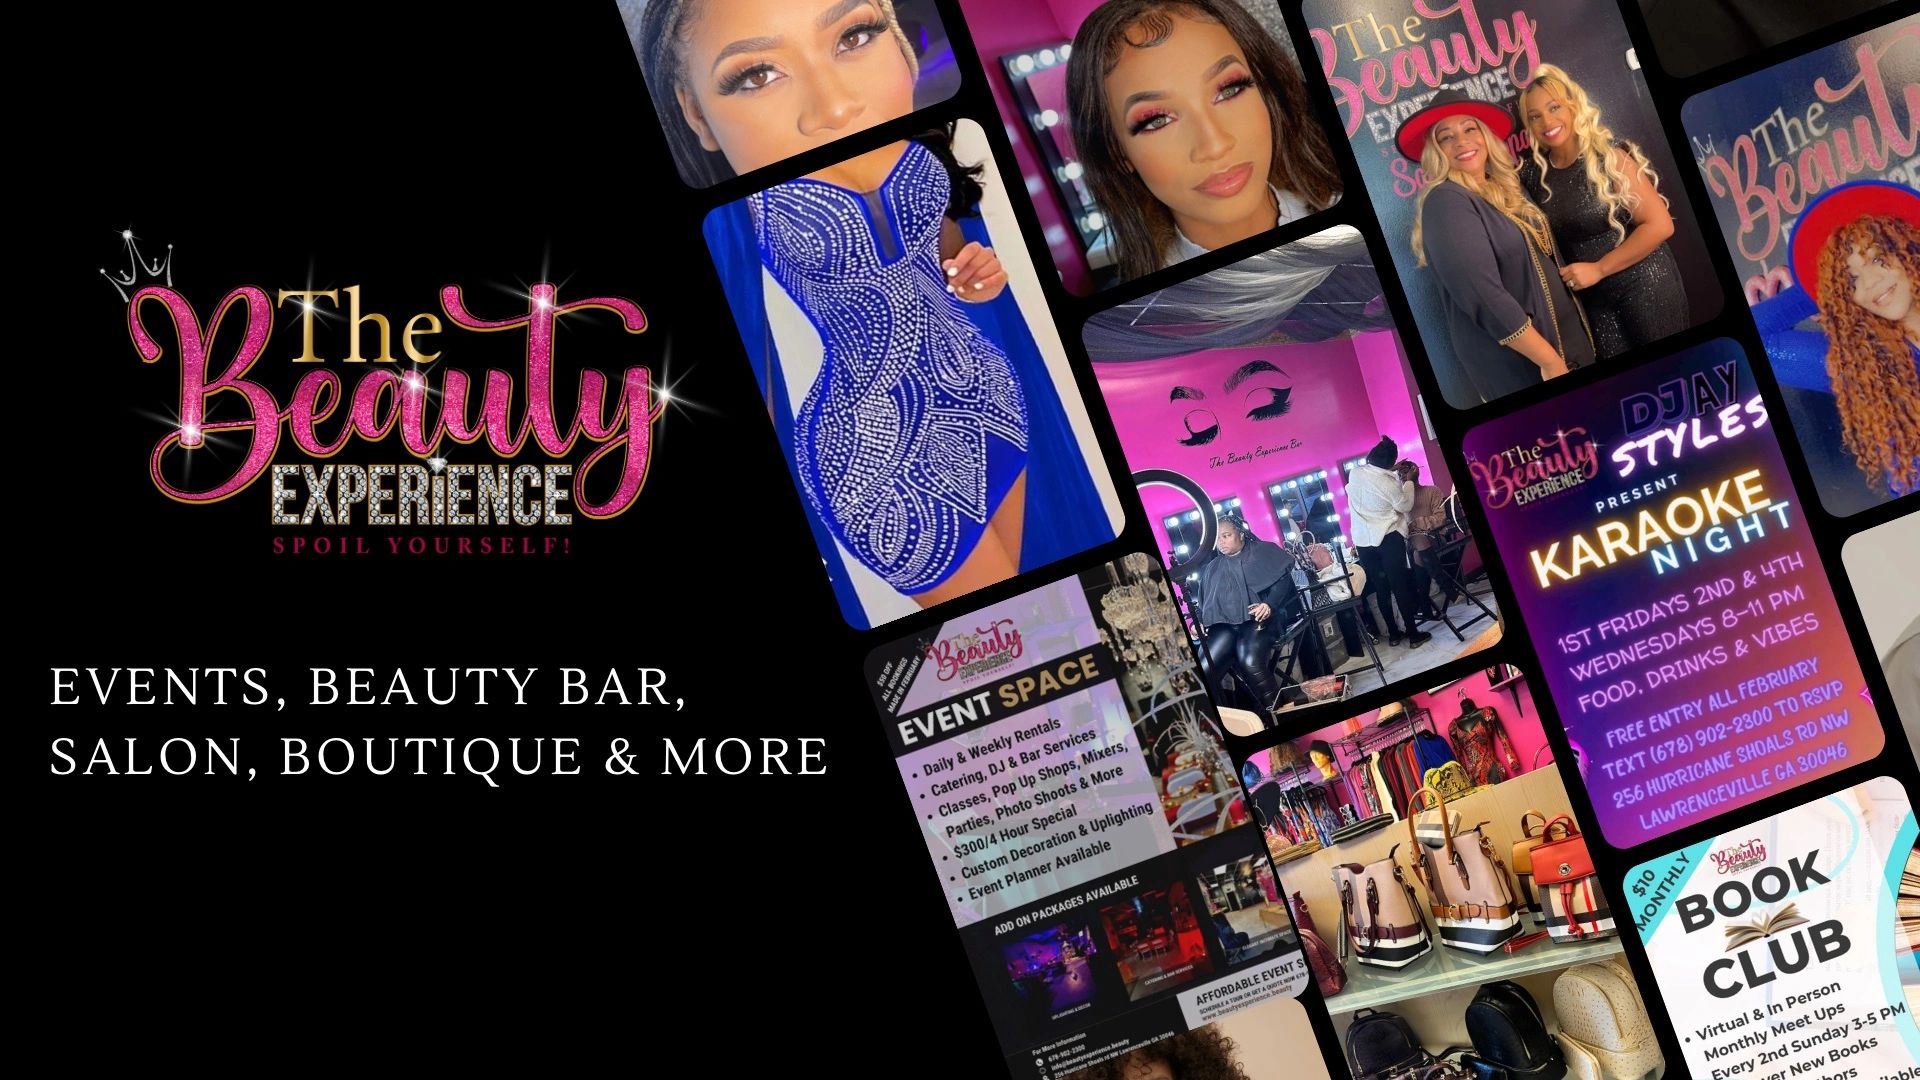 Beauty bar, salon, event space, hair services, makeup services, boutique, shop, Gwinnett county